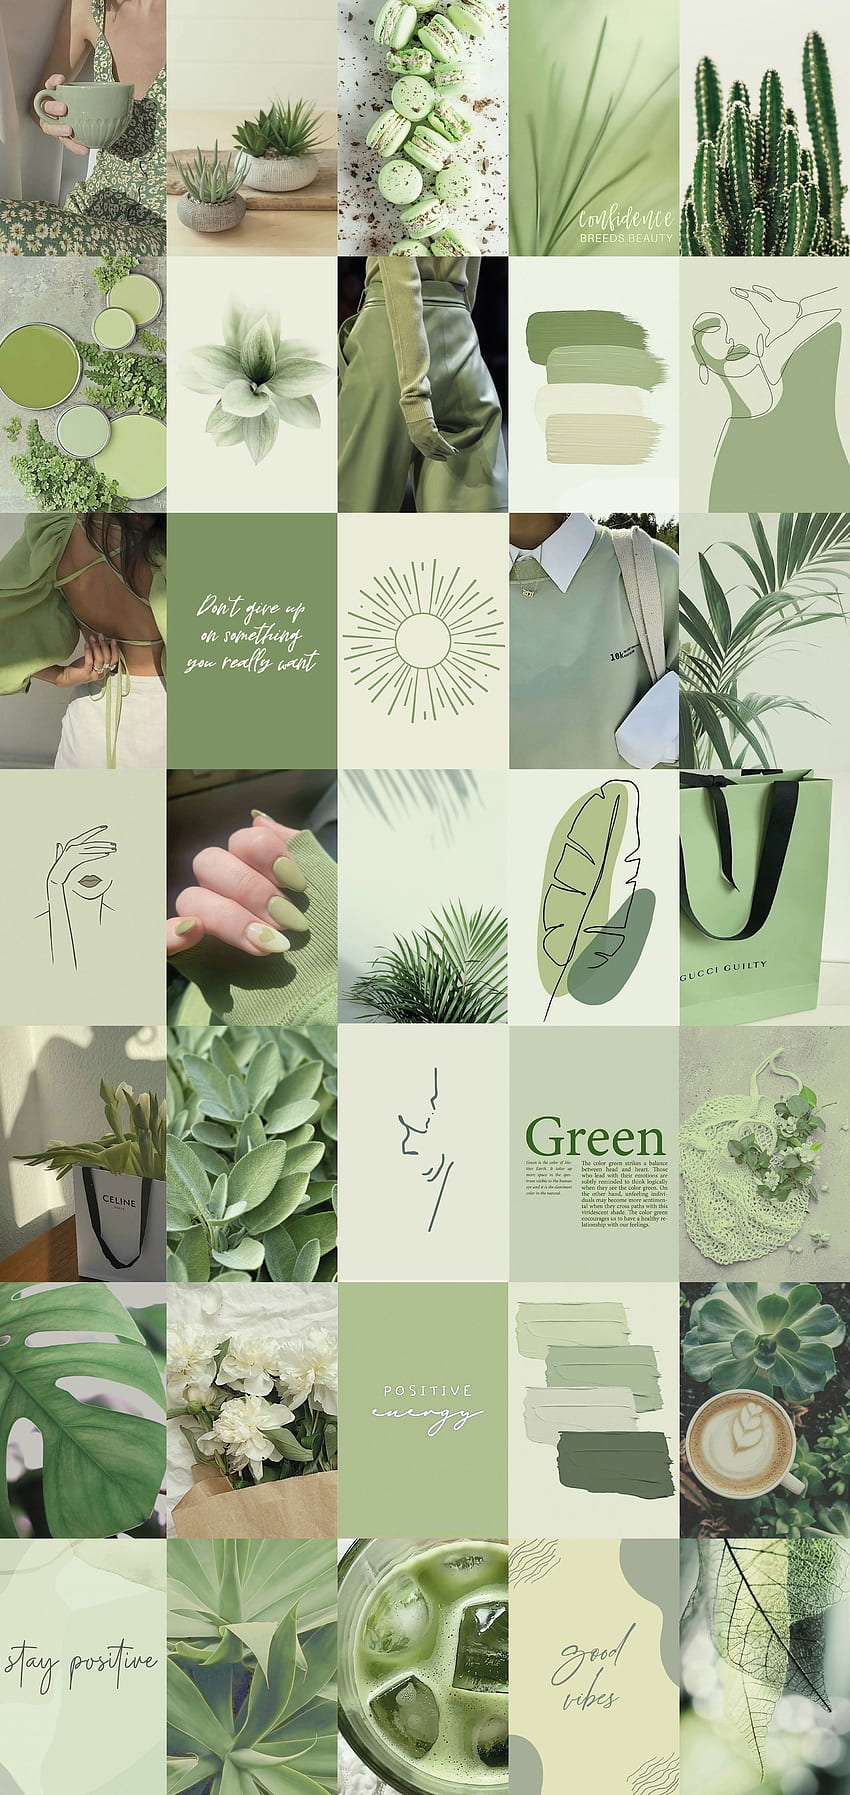 100 szt. Sage Green Wall Collage Kit 2 Boho Estetyczny miękki. Etsy w Wielkiej Brytanii. Estetyka miętowej zieleni, estetyka zieleni, zieleń, zielony kolaż szałwii Tapeta na telefon HD